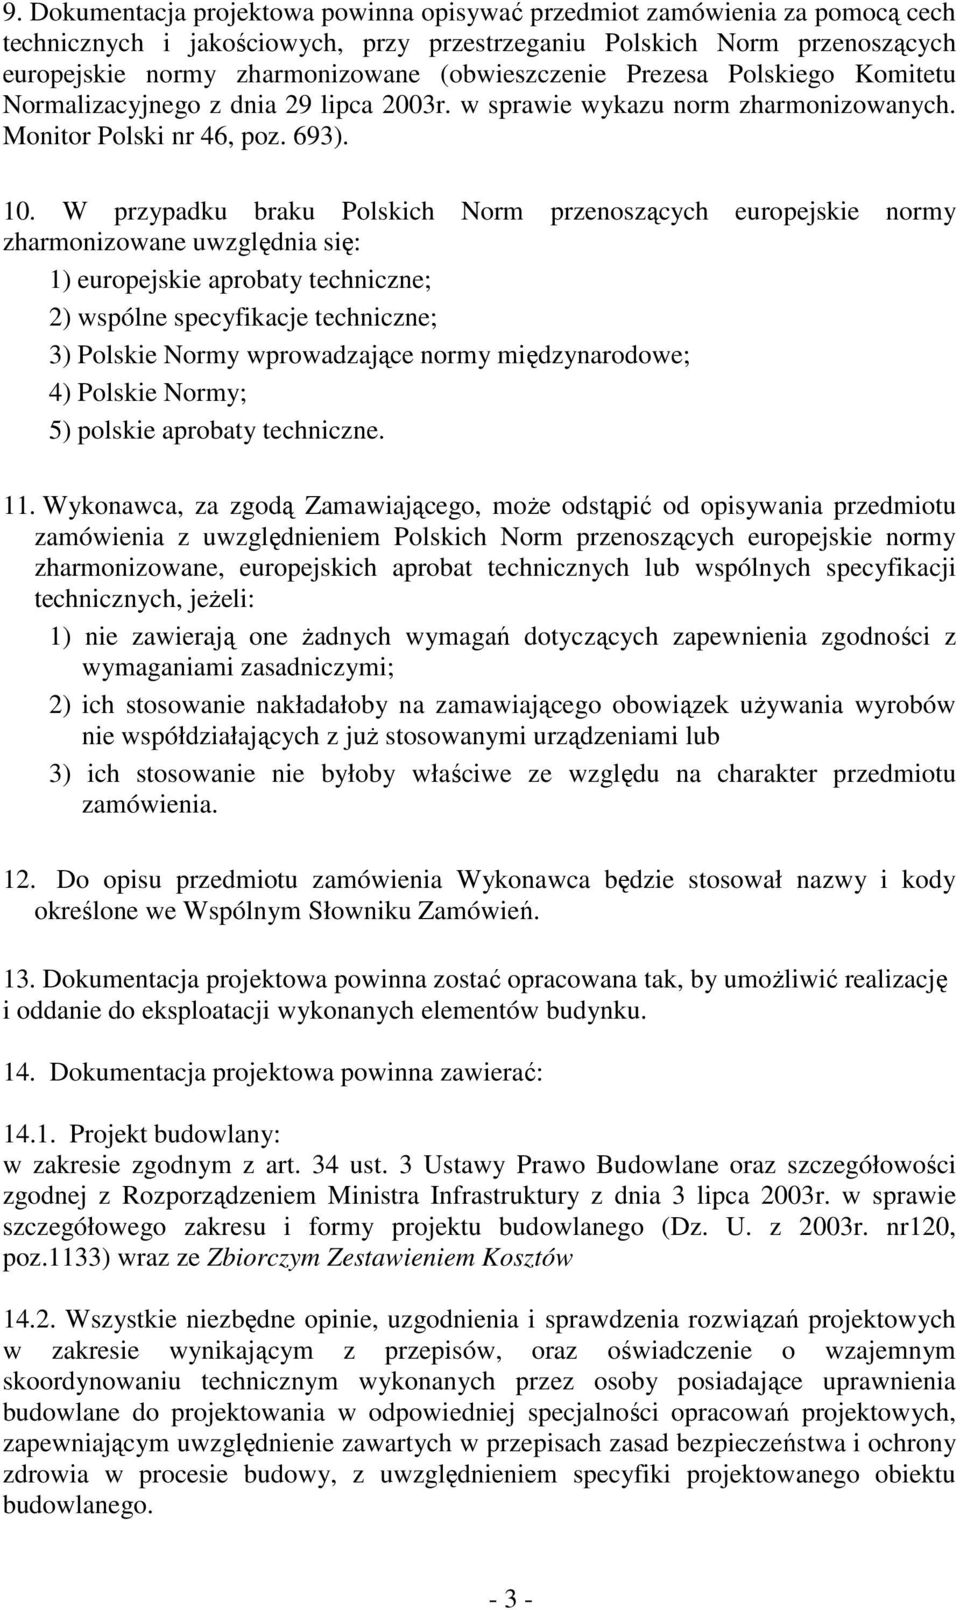 W przypadku braku Polskich Norm przenoszących europejskie normy zharmonizowane uwzględnia się: 1) europejskie aprobaty techniczne; 2) wspólne specyfikacje techniczne; 3) Polskie Normy wprowadzające